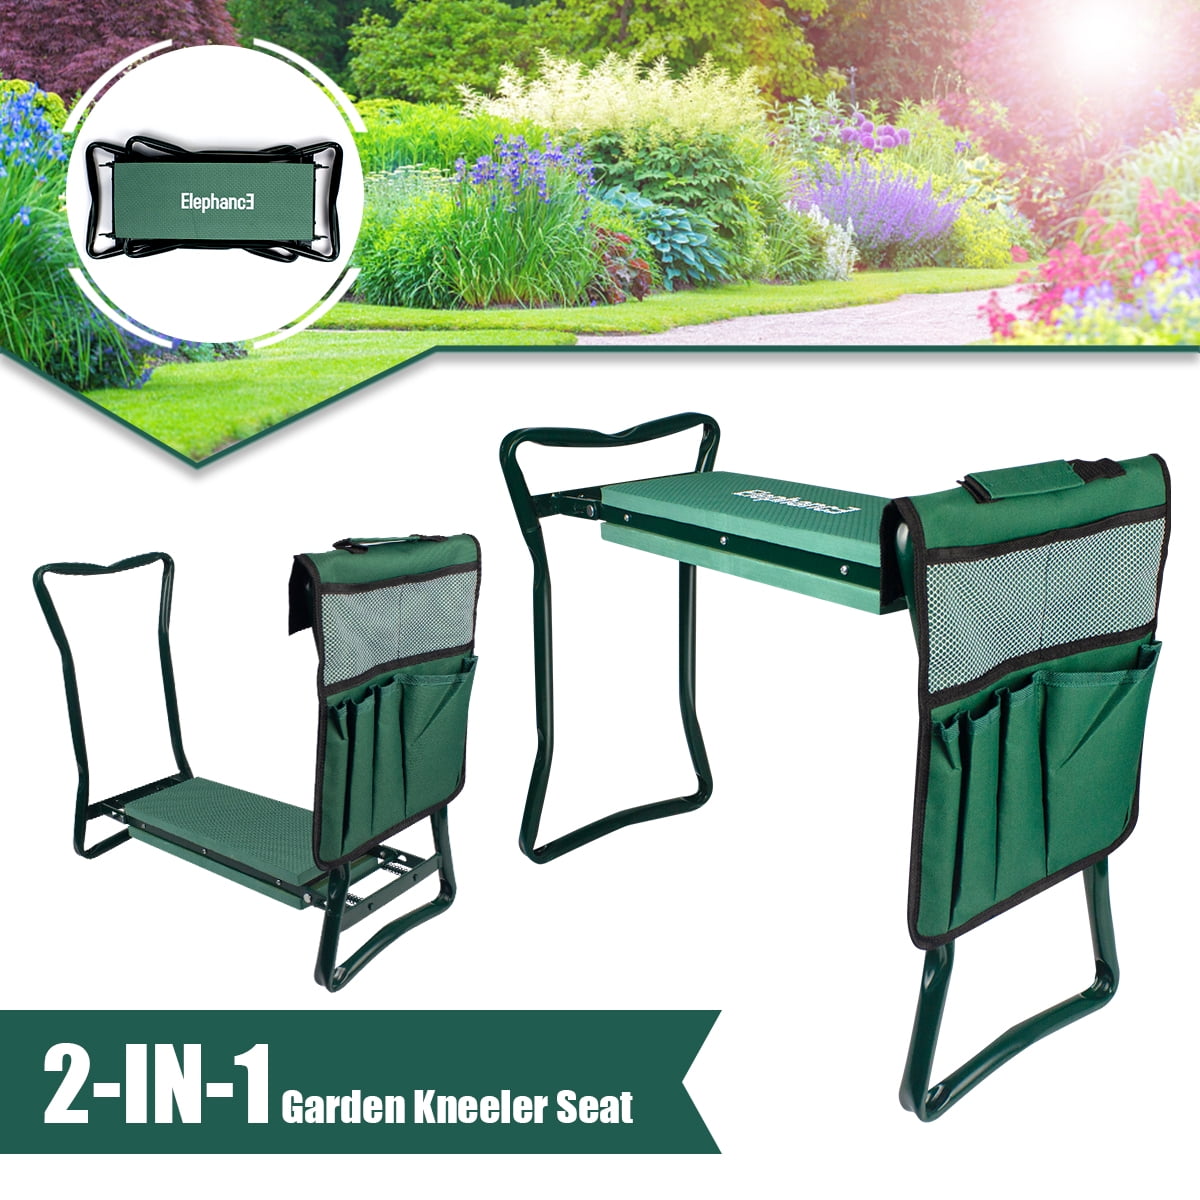 1 X Garden Kneeler Portable Garden Kneeling Chair Stool Storage Bag Seat Pad 